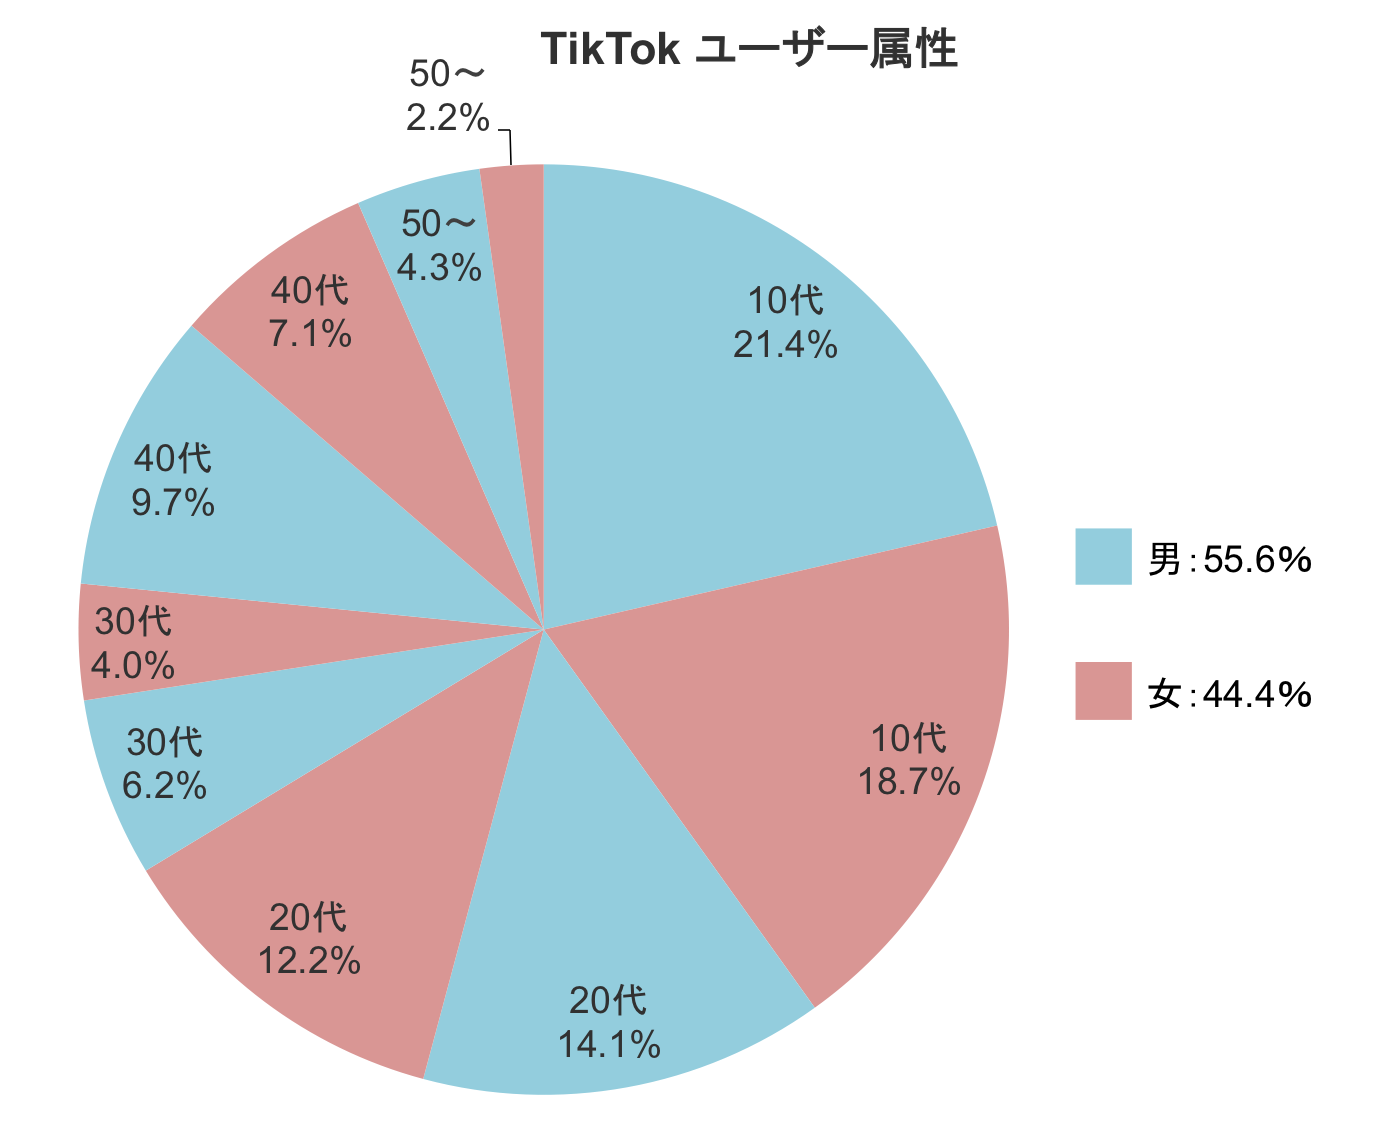 TikTokのユーザー属性割合の円グラフ